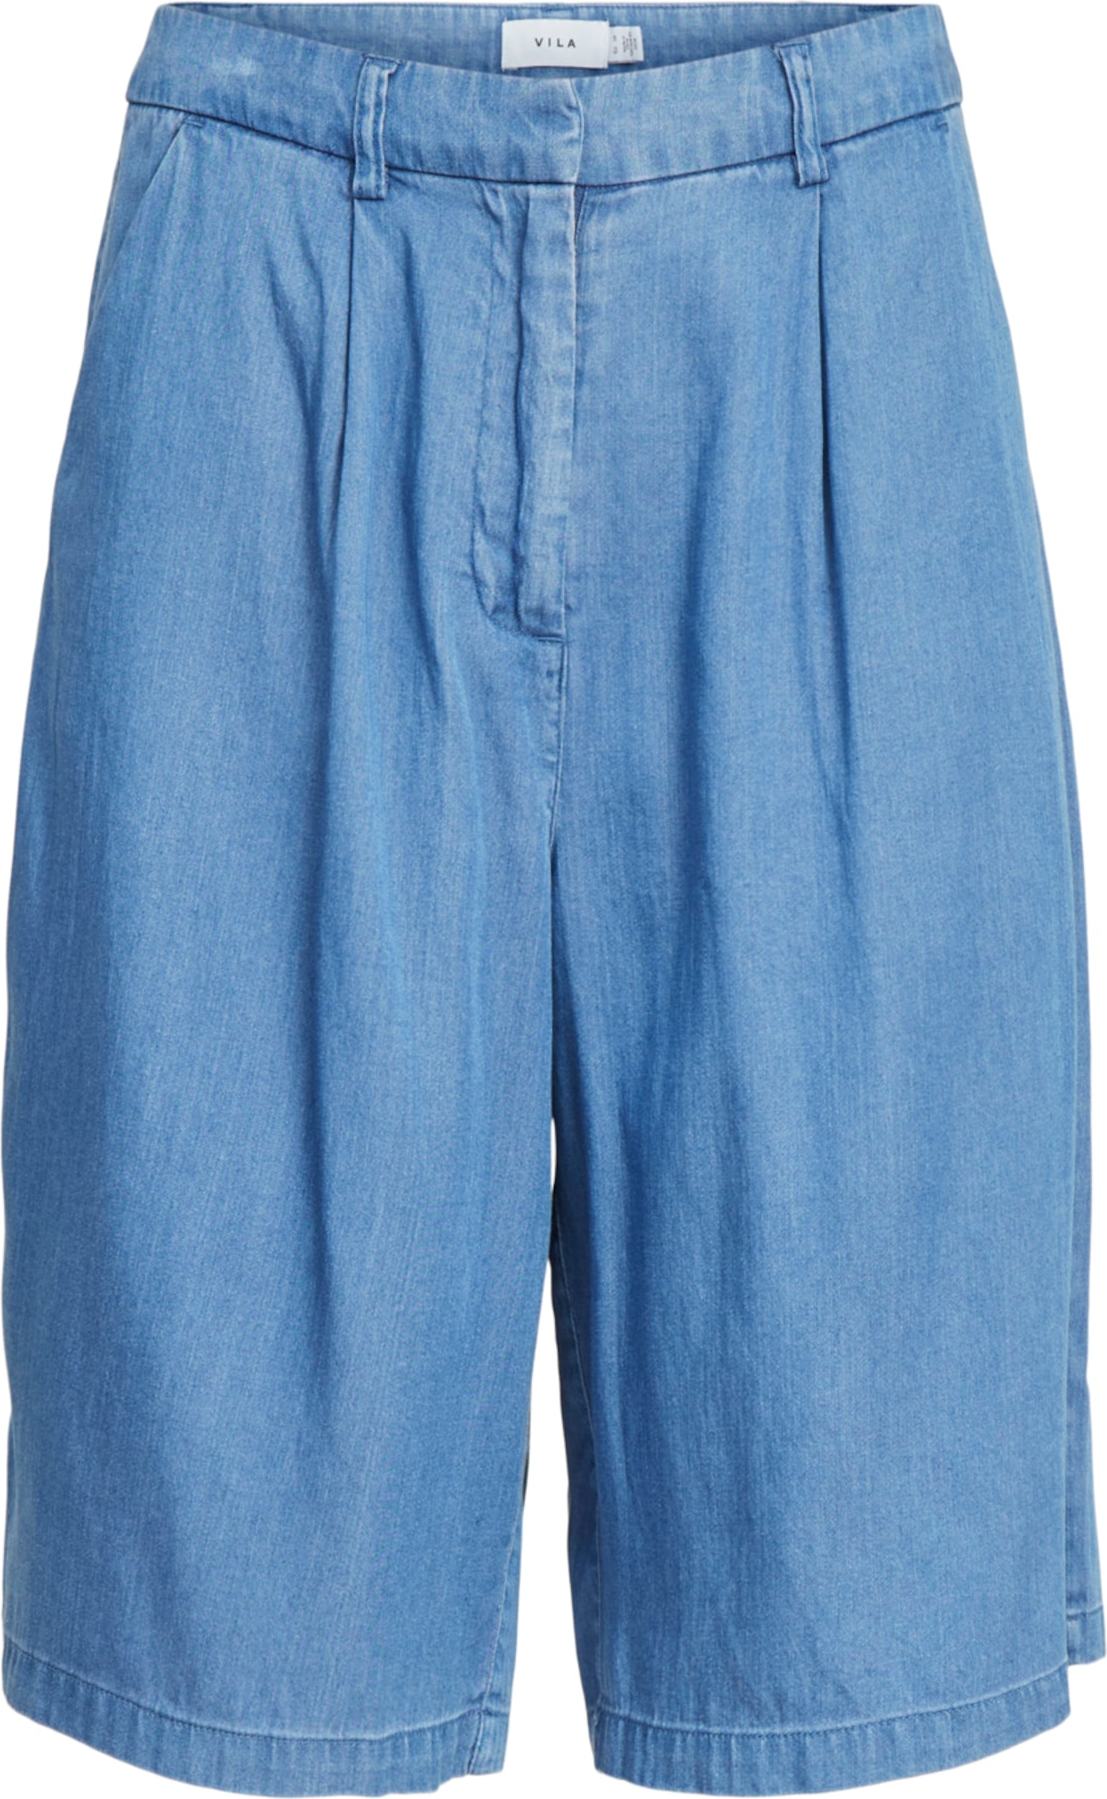 VILA Kalhoty se sklady v pase 'Bista' modrá džínovina